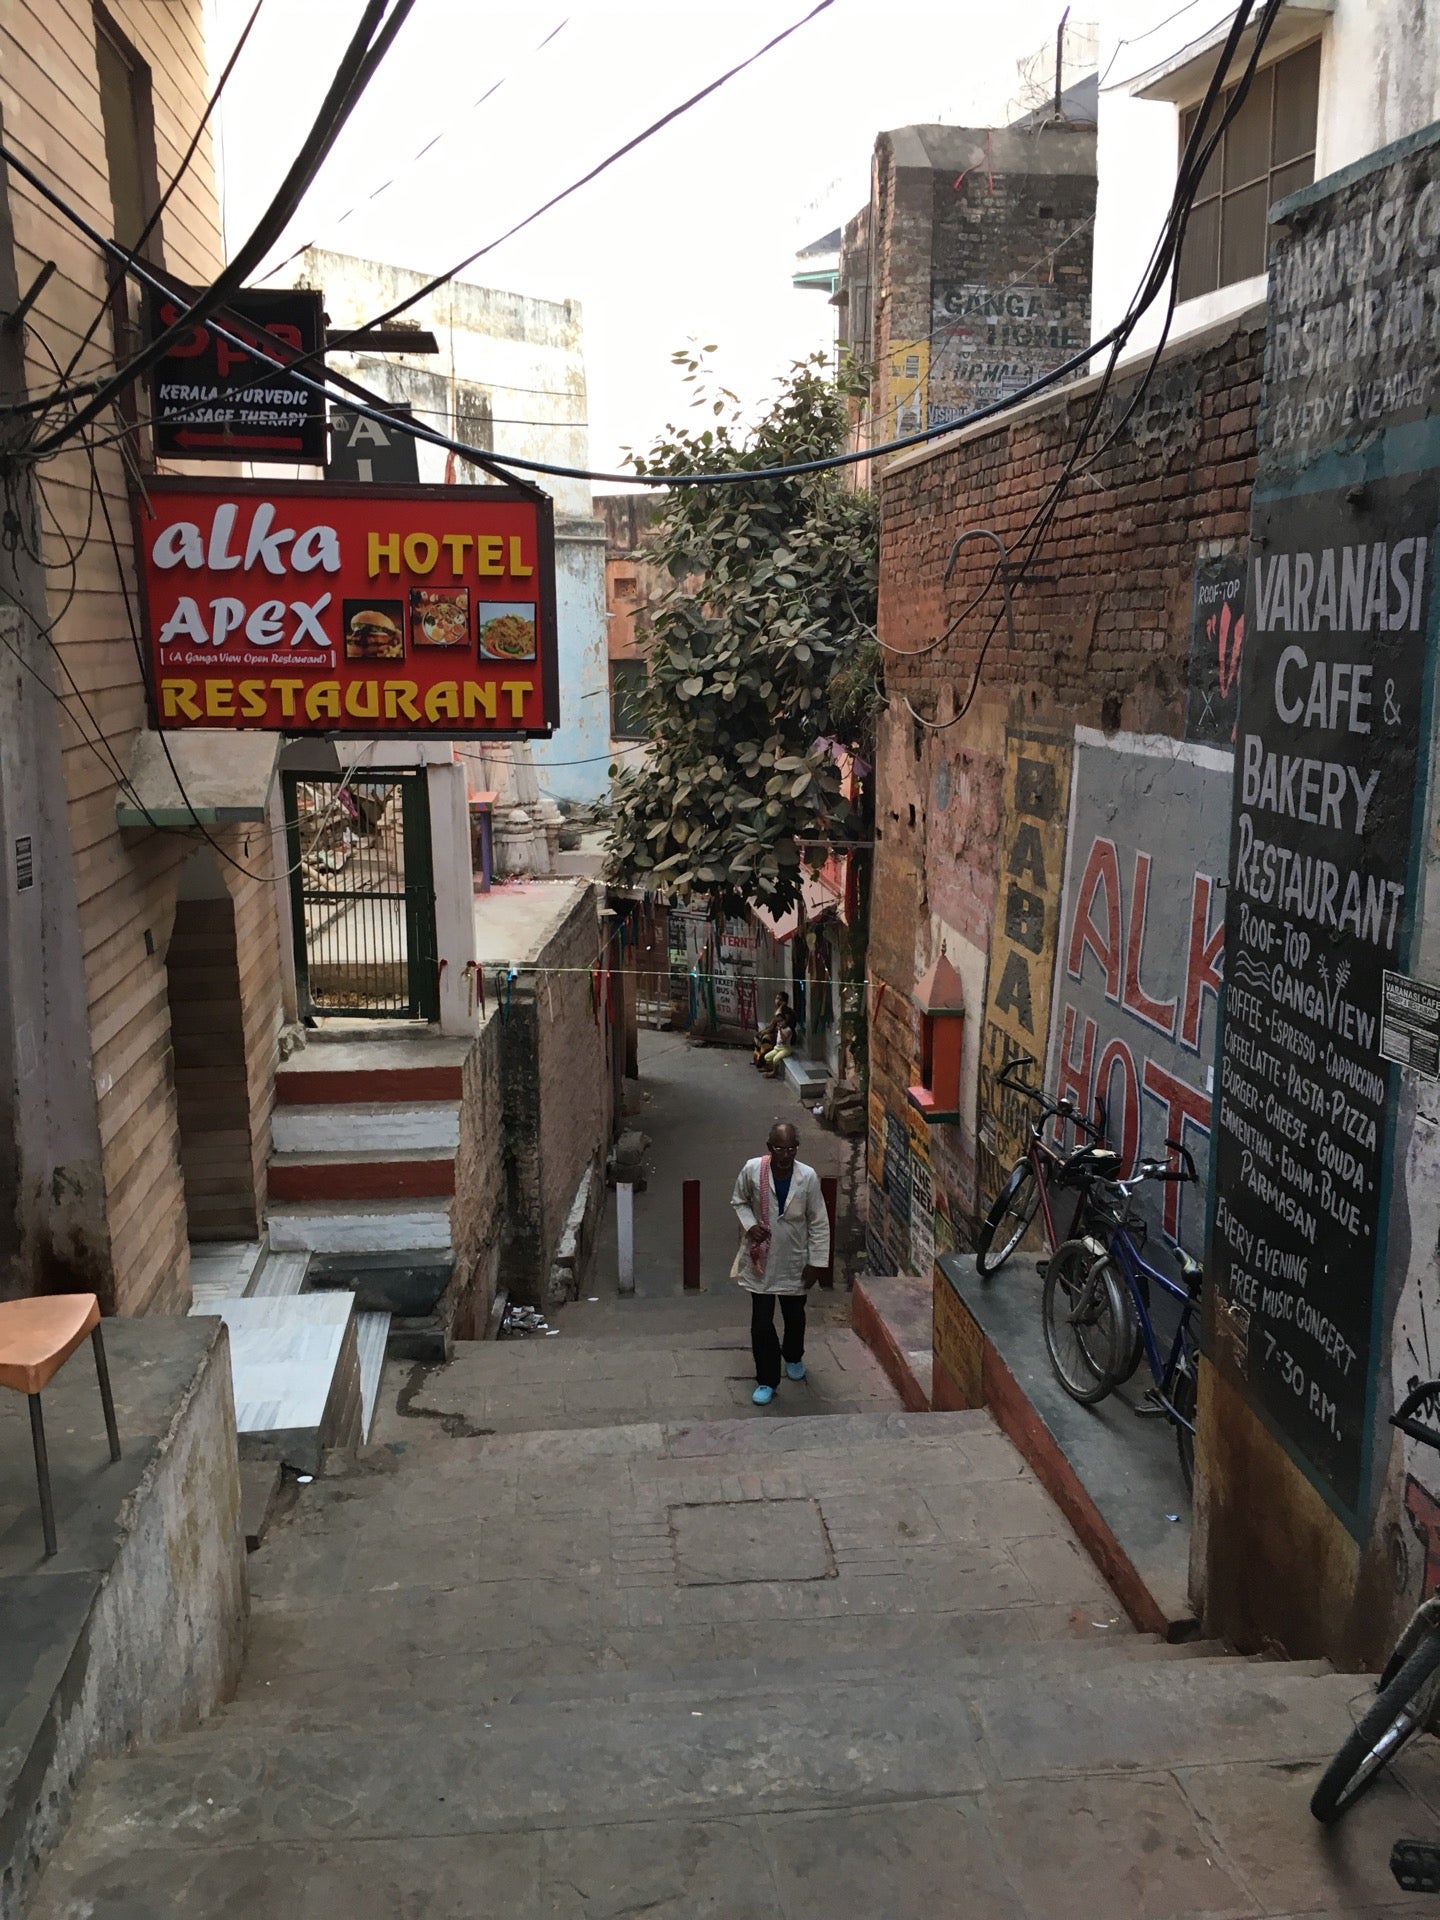 Varanasi Cafe and Bakery Restaurant